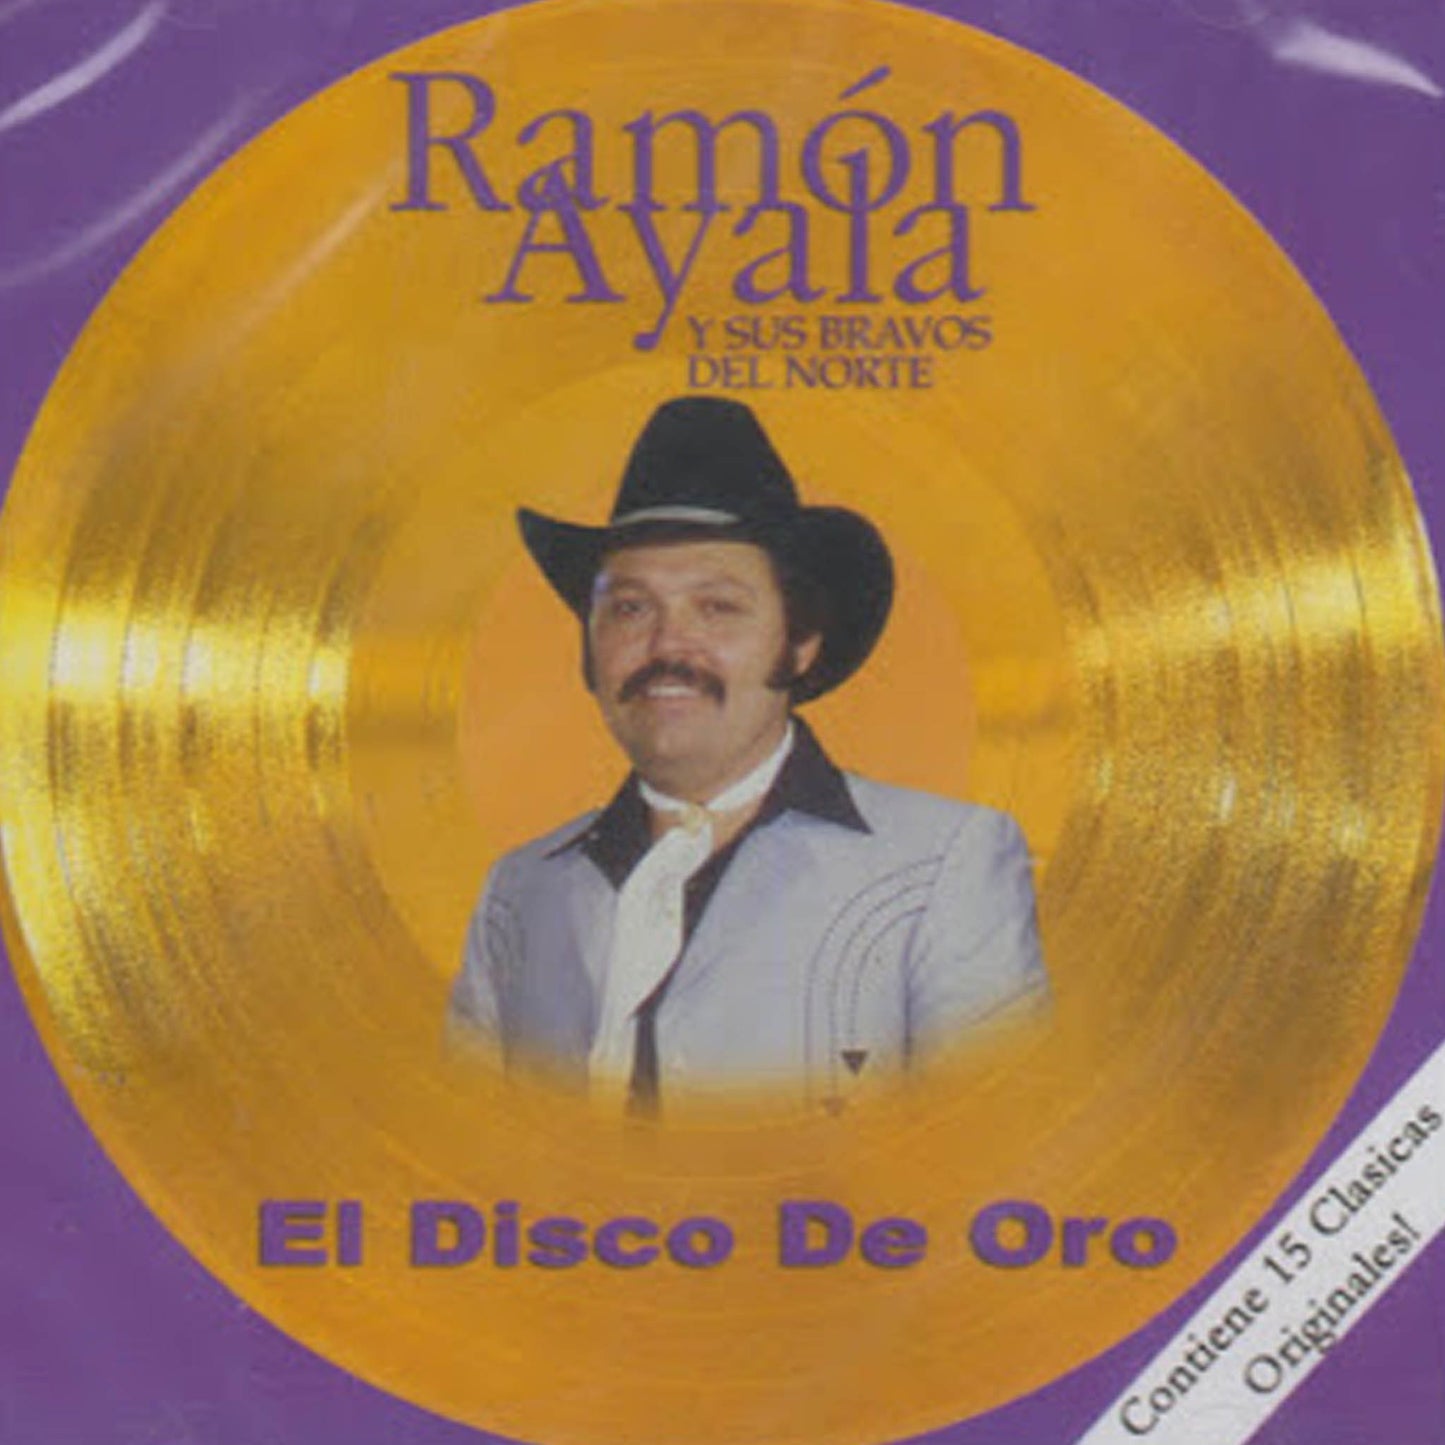 Ramon Ayala Y Sus Bravos Del Norte - El Disco De Oro Vol. 1 (CD)